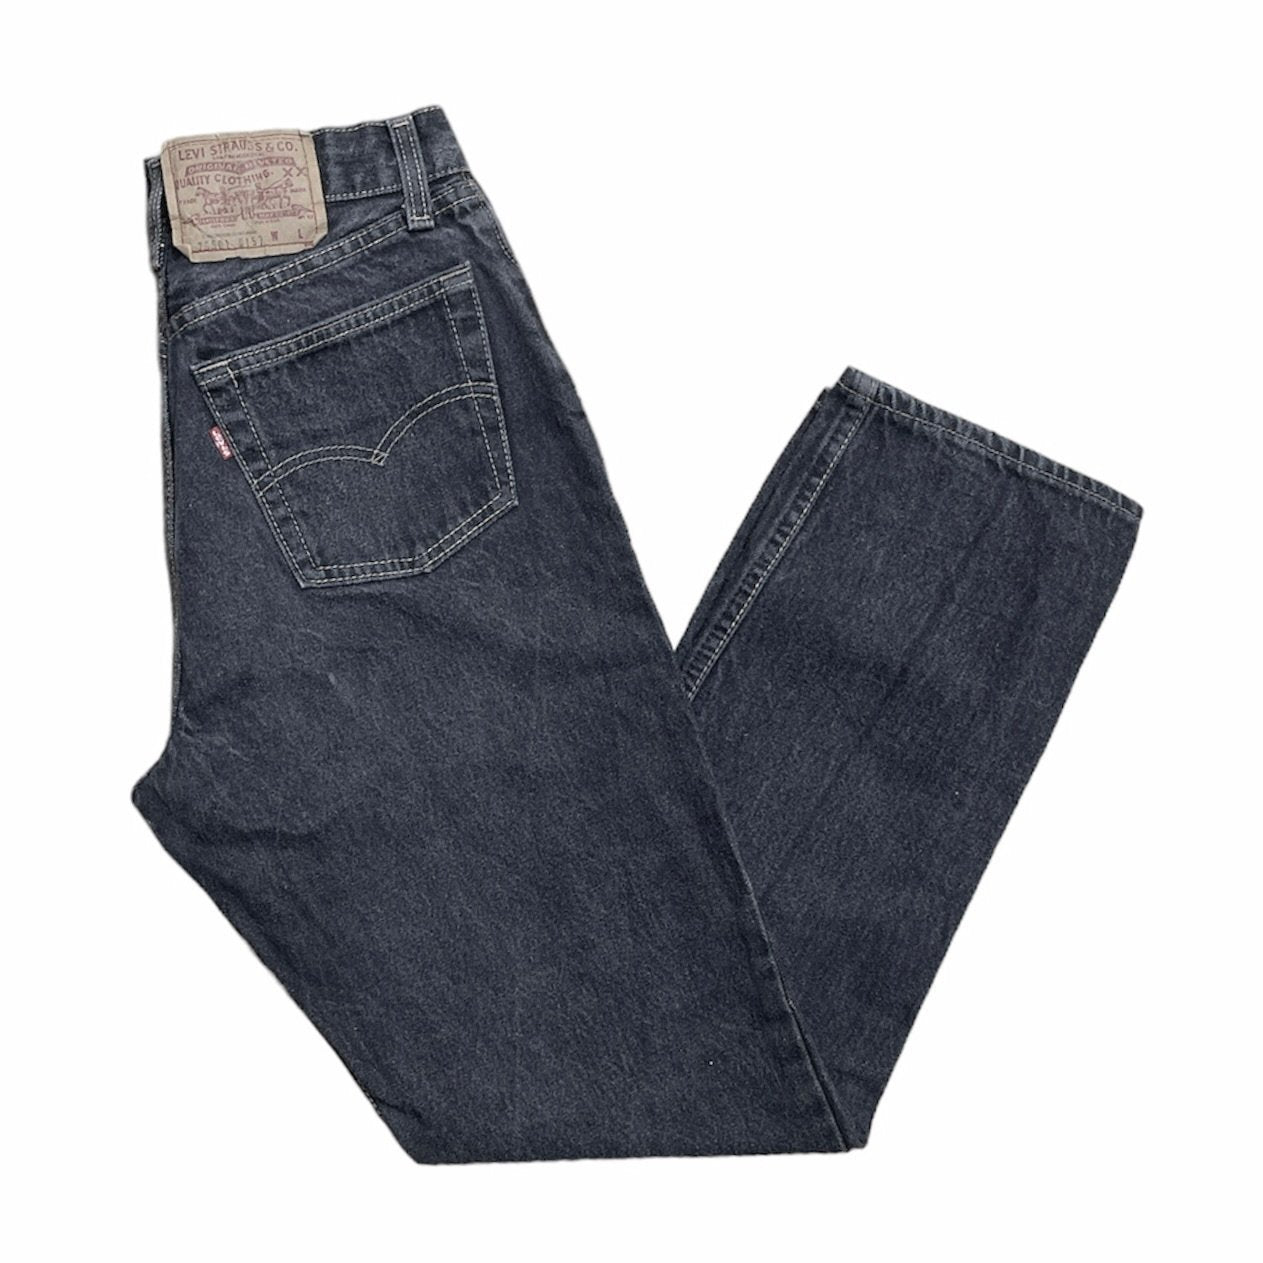 Vintage Levis 512 Grey/Black Jeans (W30/L30)